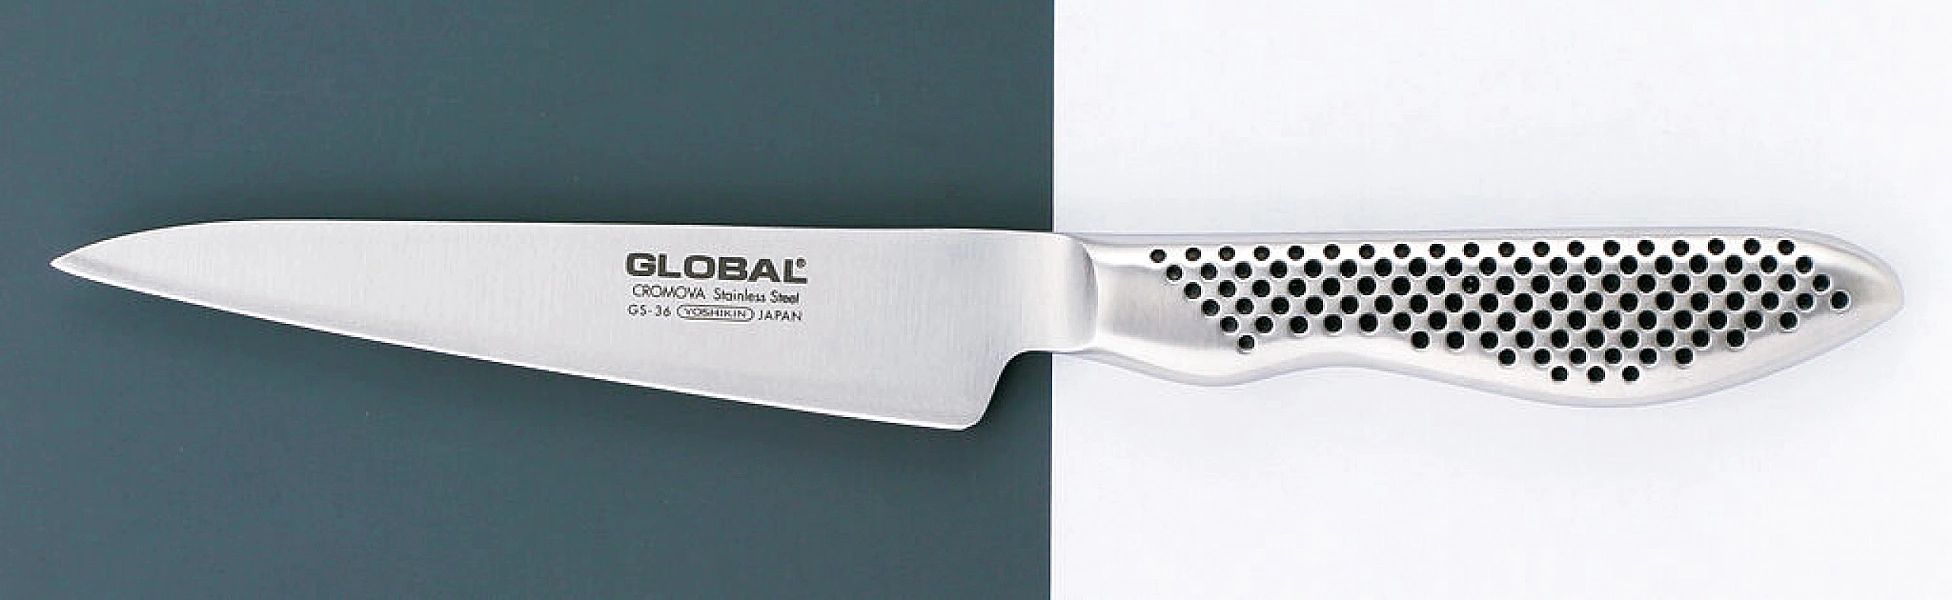 Nóż uniwersalny 11cm | Global Gs-36